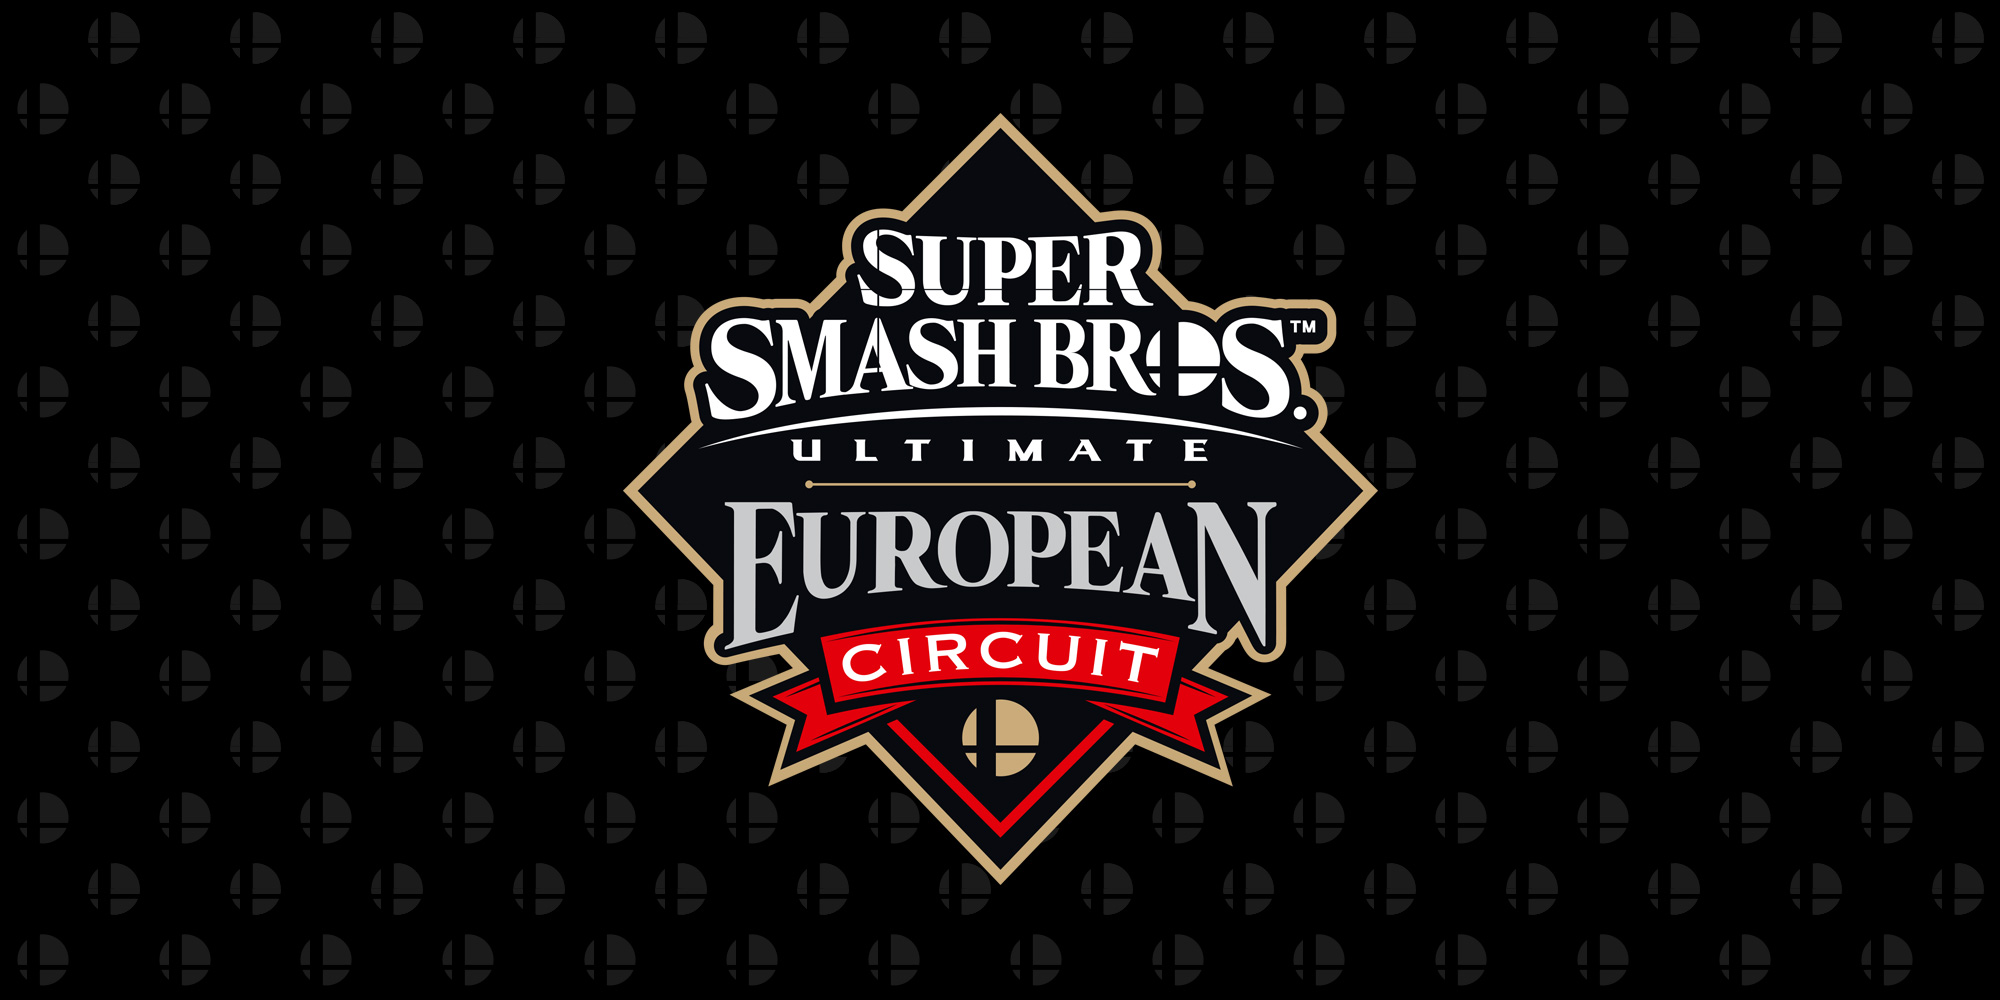 ¡DarkThunder se ha alzado con la victoria en el DreamHack Leipzig, el cuarto evento del Super Smash Bros. Ultimate European Circuit!